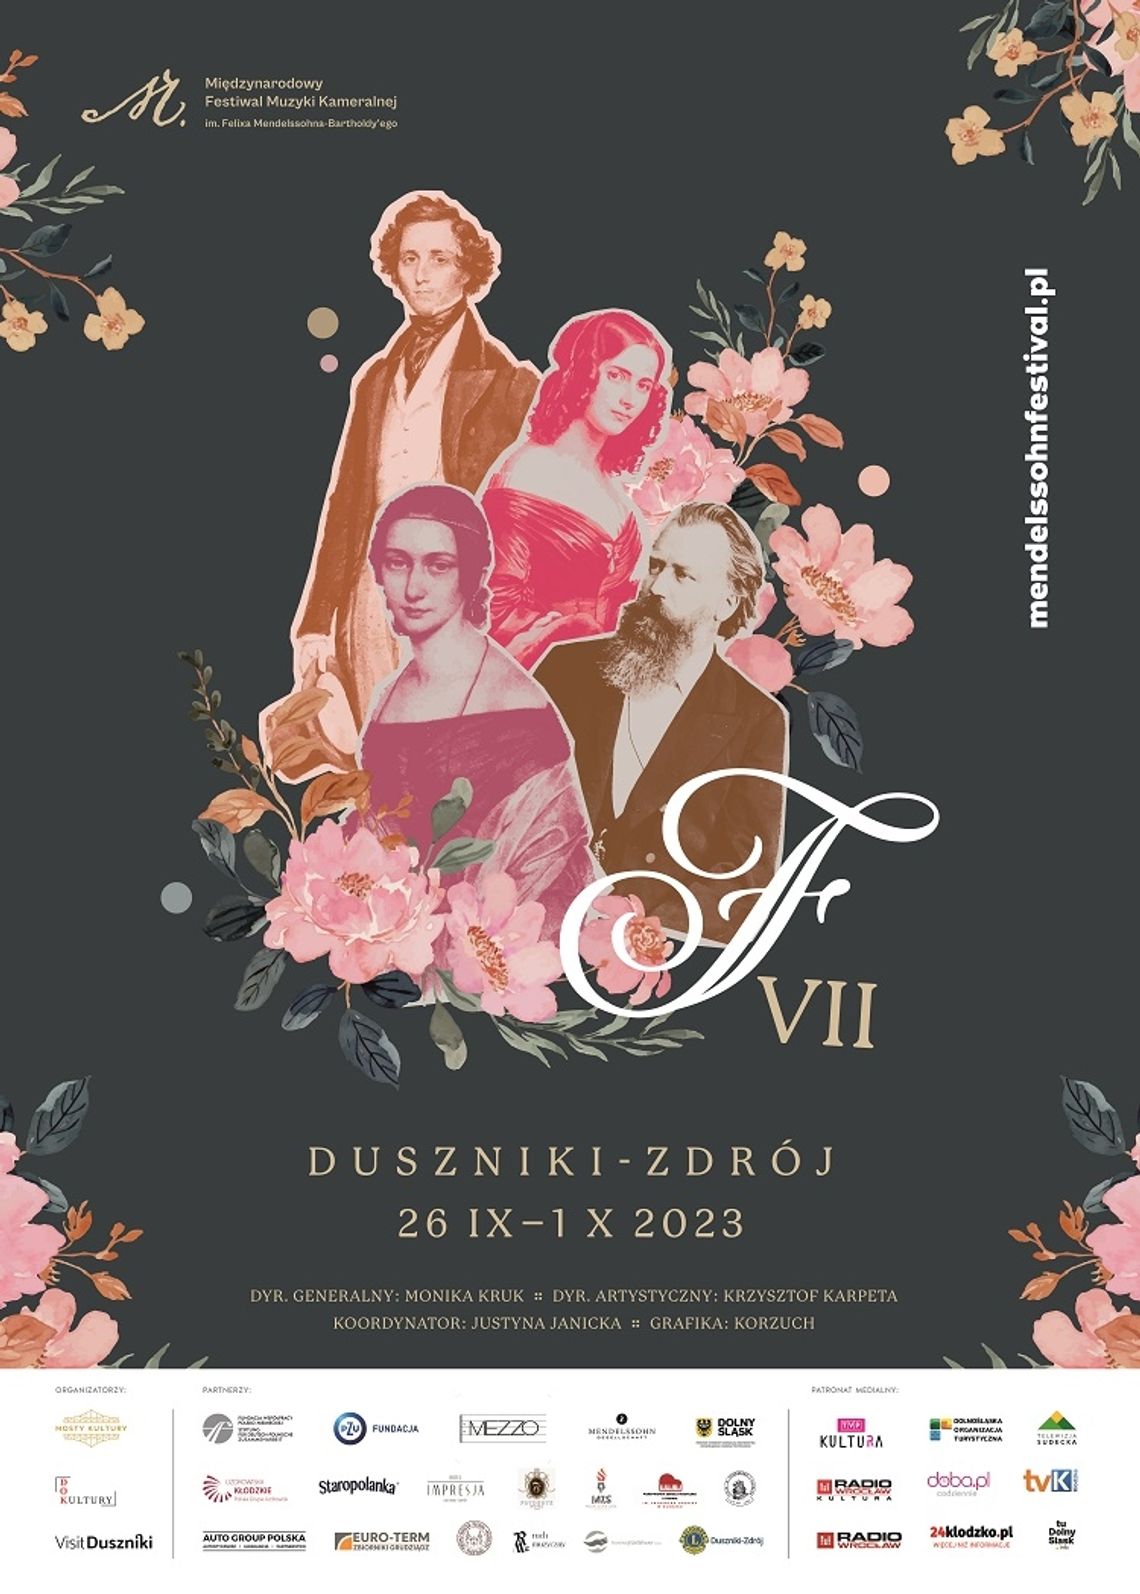 Przed nami Festiwal Felixa Mendelssohna 2023 w Dusznikach-Zdroju